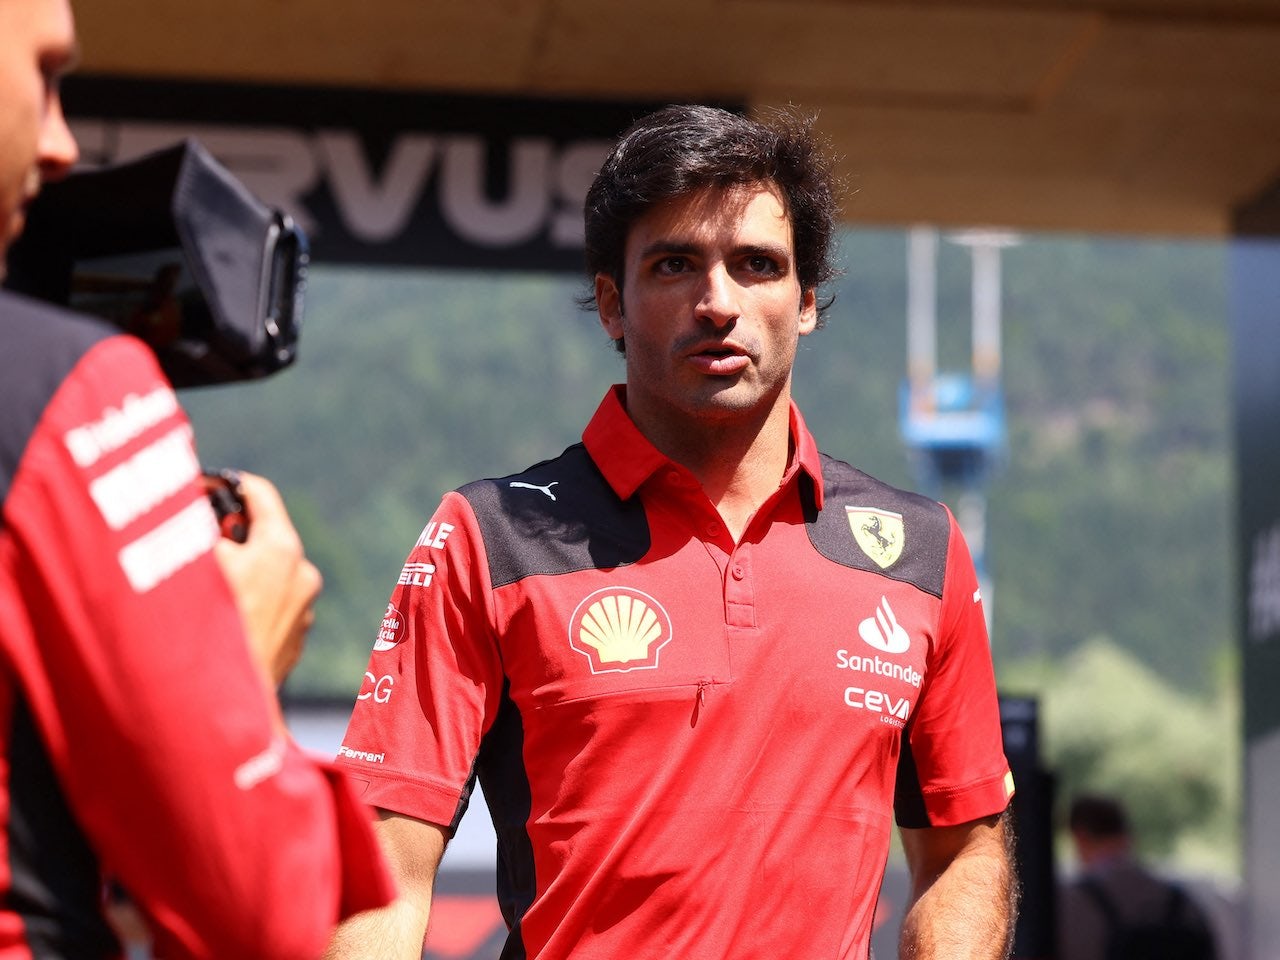 'No better place' for Sainz than Ferrari